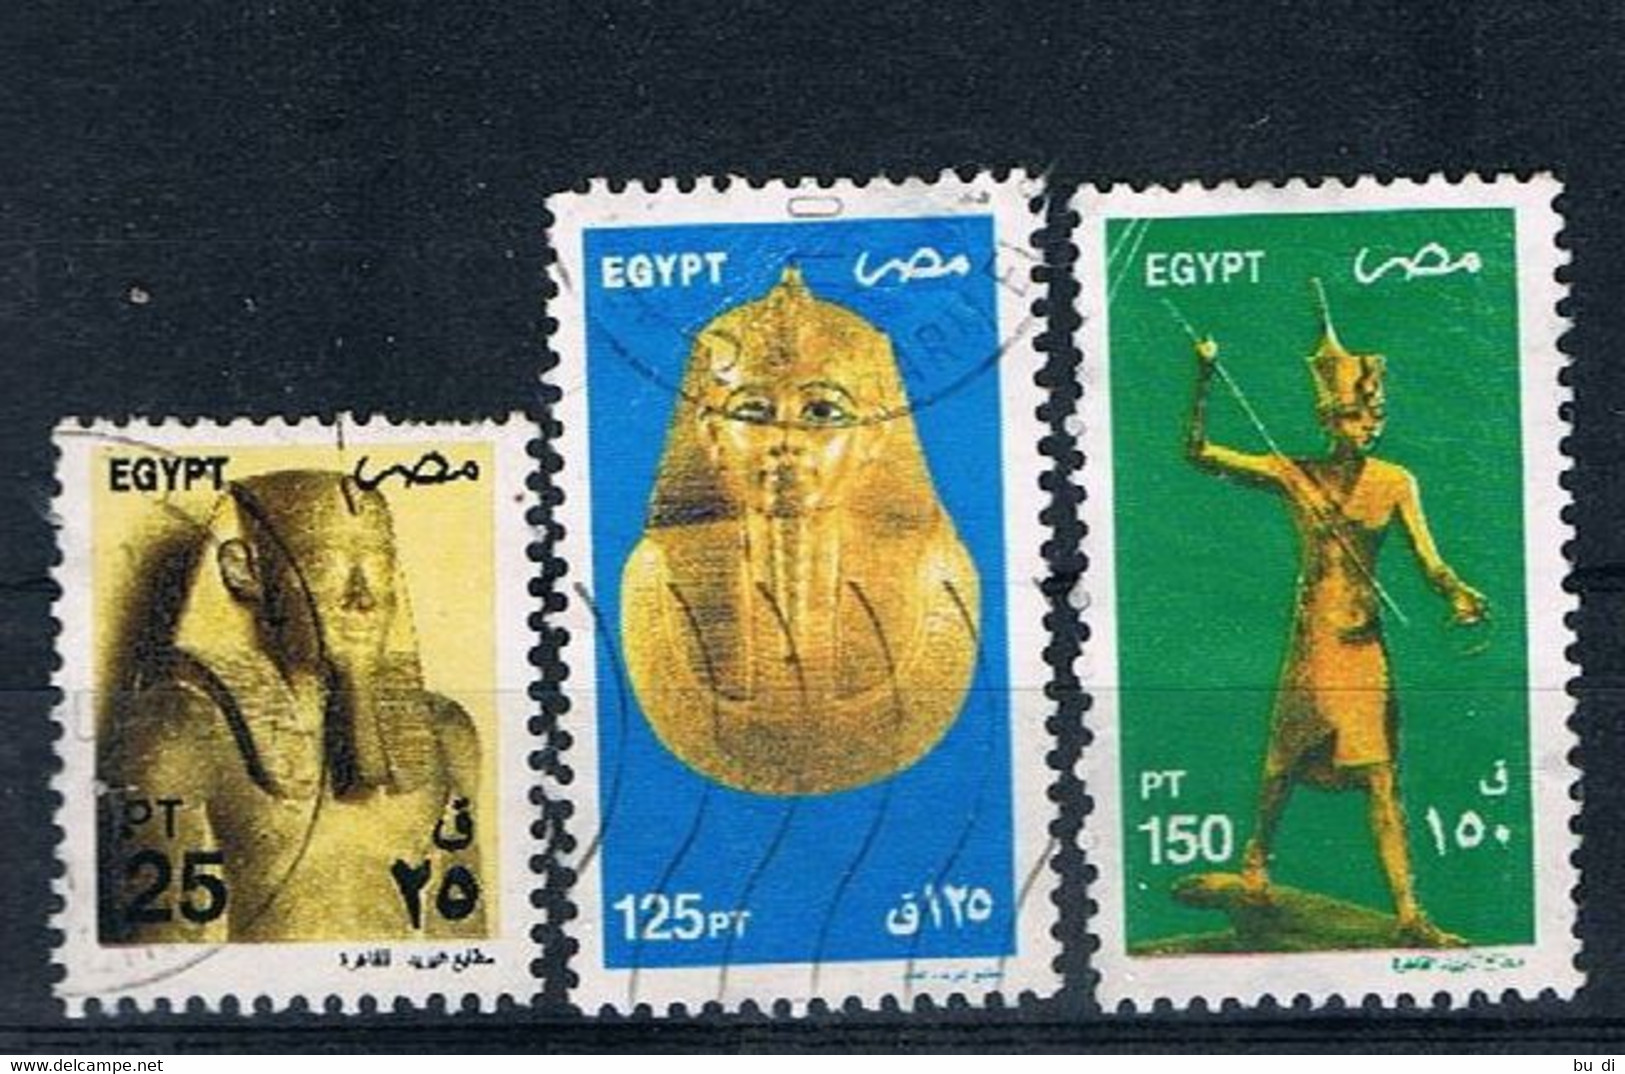 Ägypten - Egypt - 2081 2089 2090 - ägyptische Kunst - Statue, Totenmaske, U.a. Tut-ench Amun - Usati